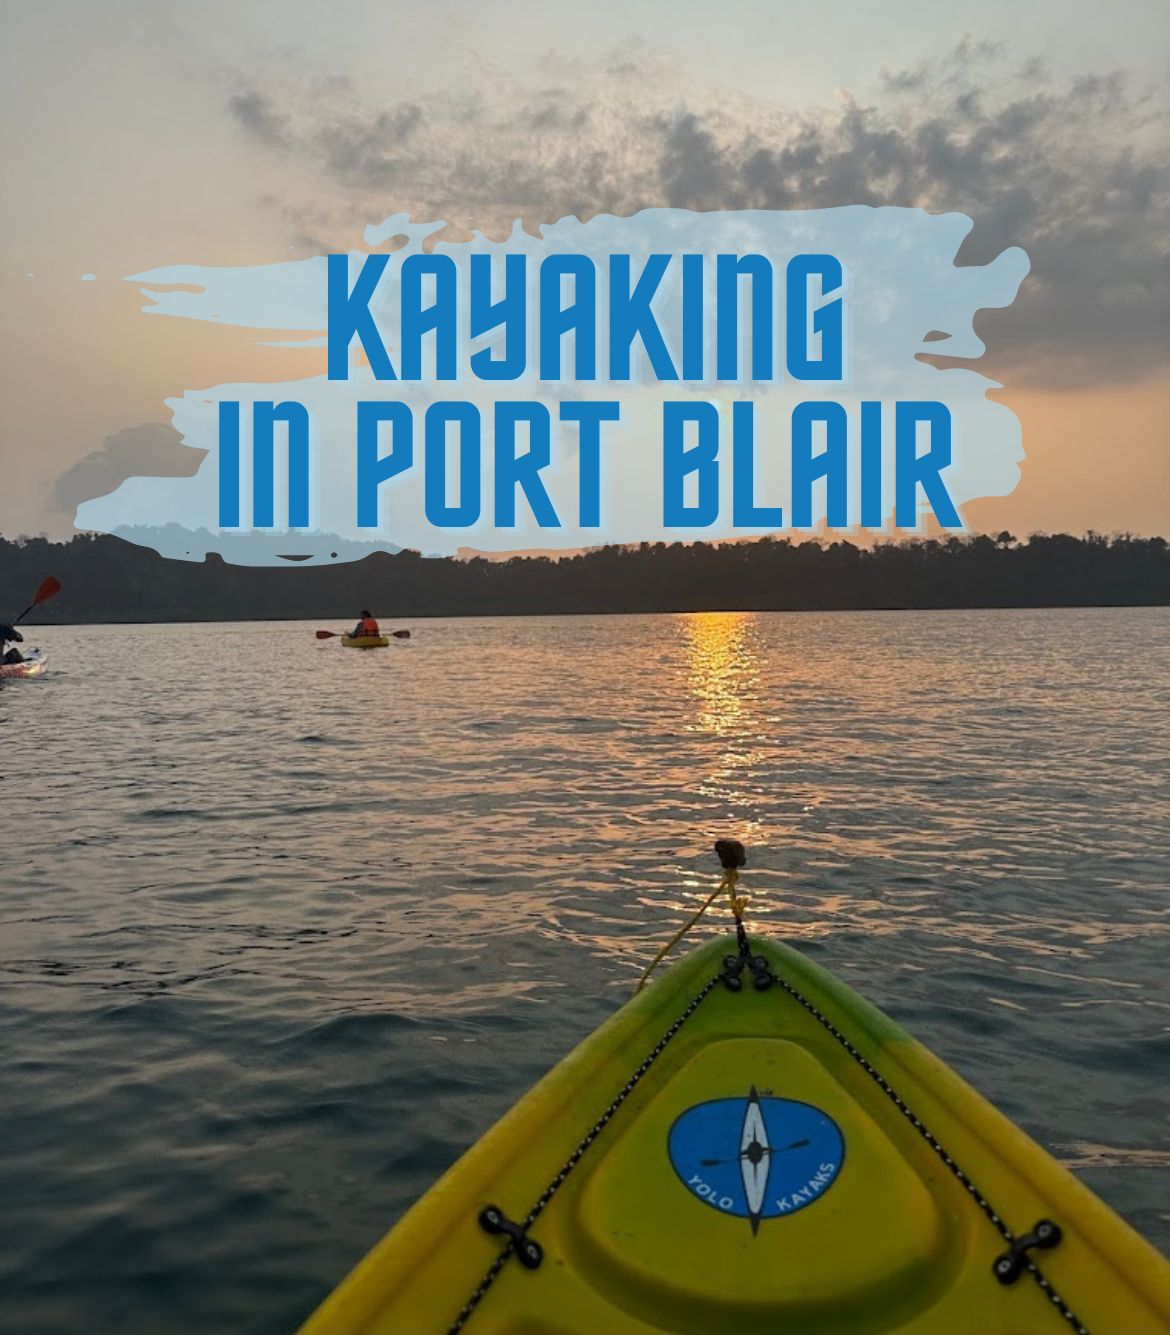 Kayaking in Port Blair